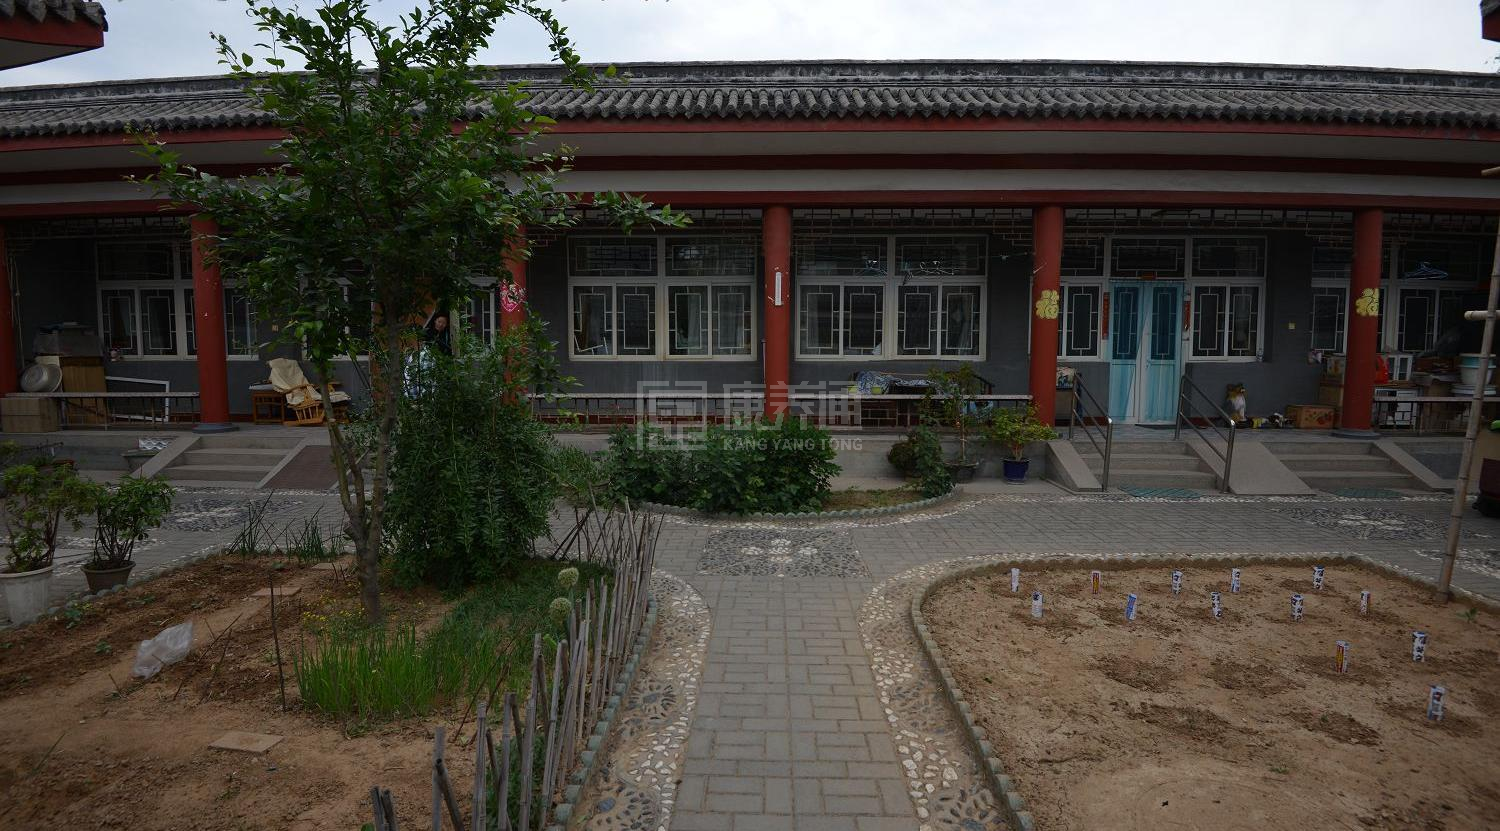 北京市昌平区十三陵镇温馨老年公寓环境图-阳台